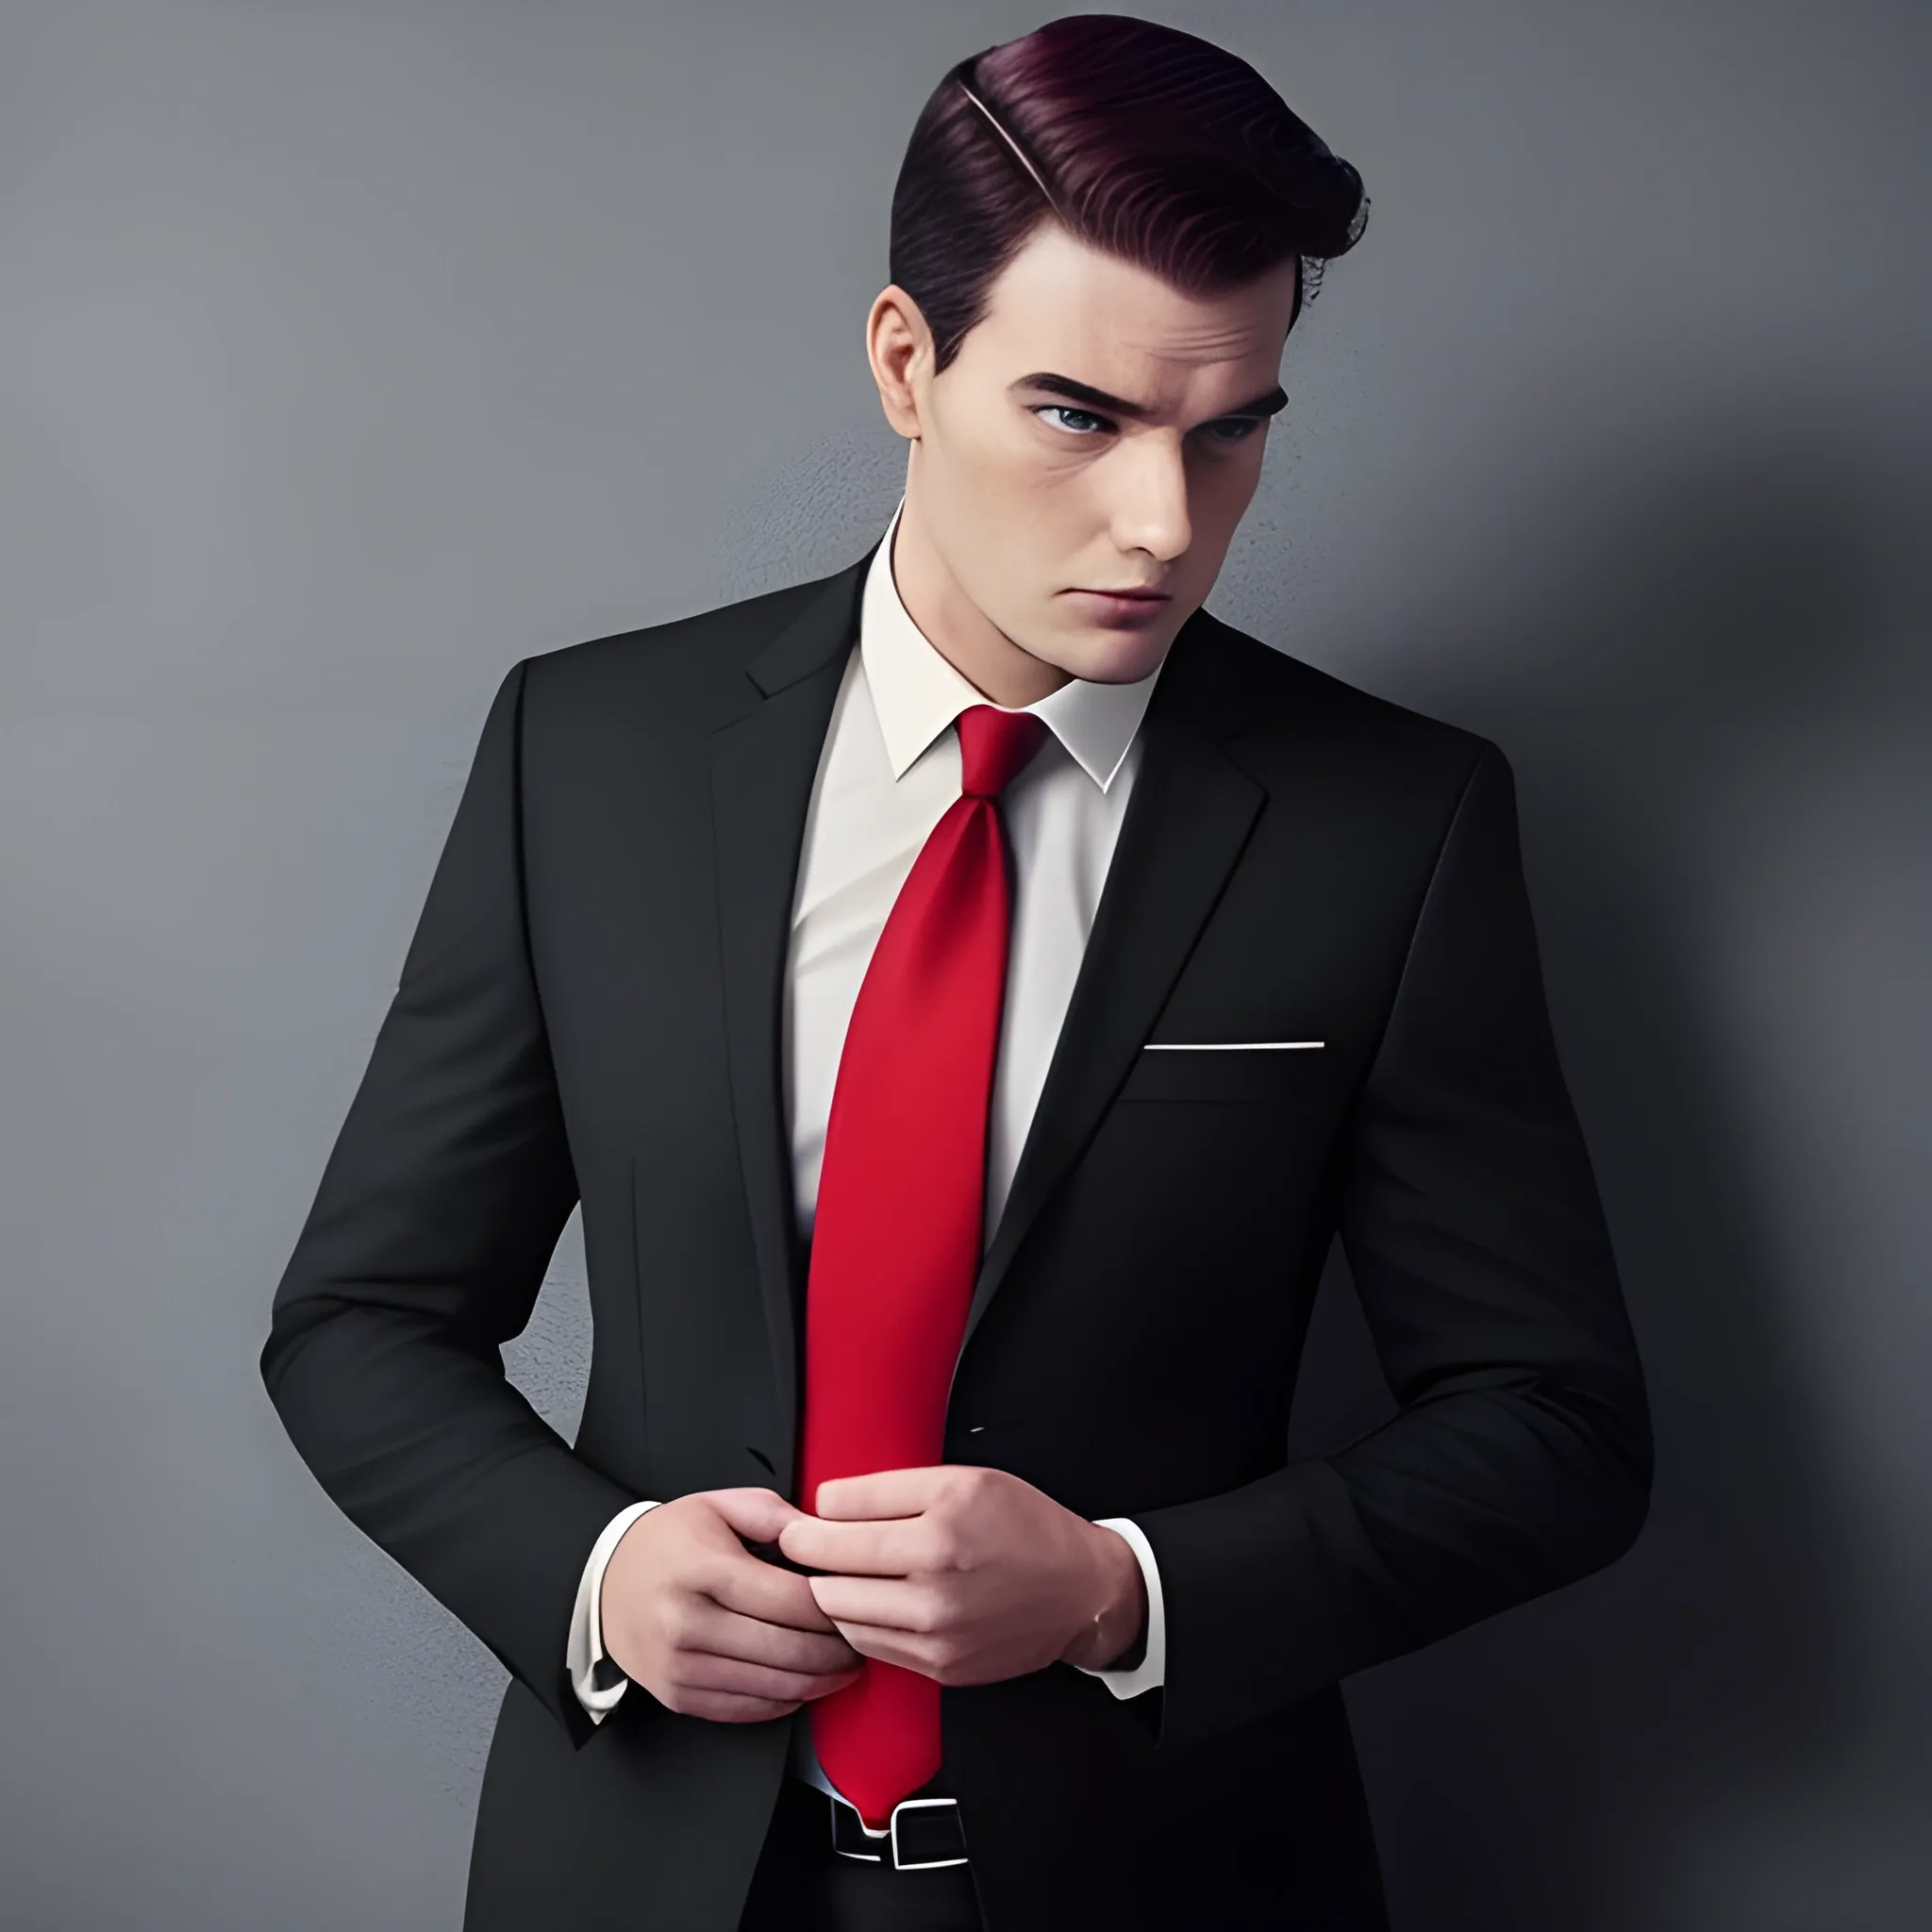 Black suit with red tie | Mens dress outfits, Black suit men, Wedding suits  men